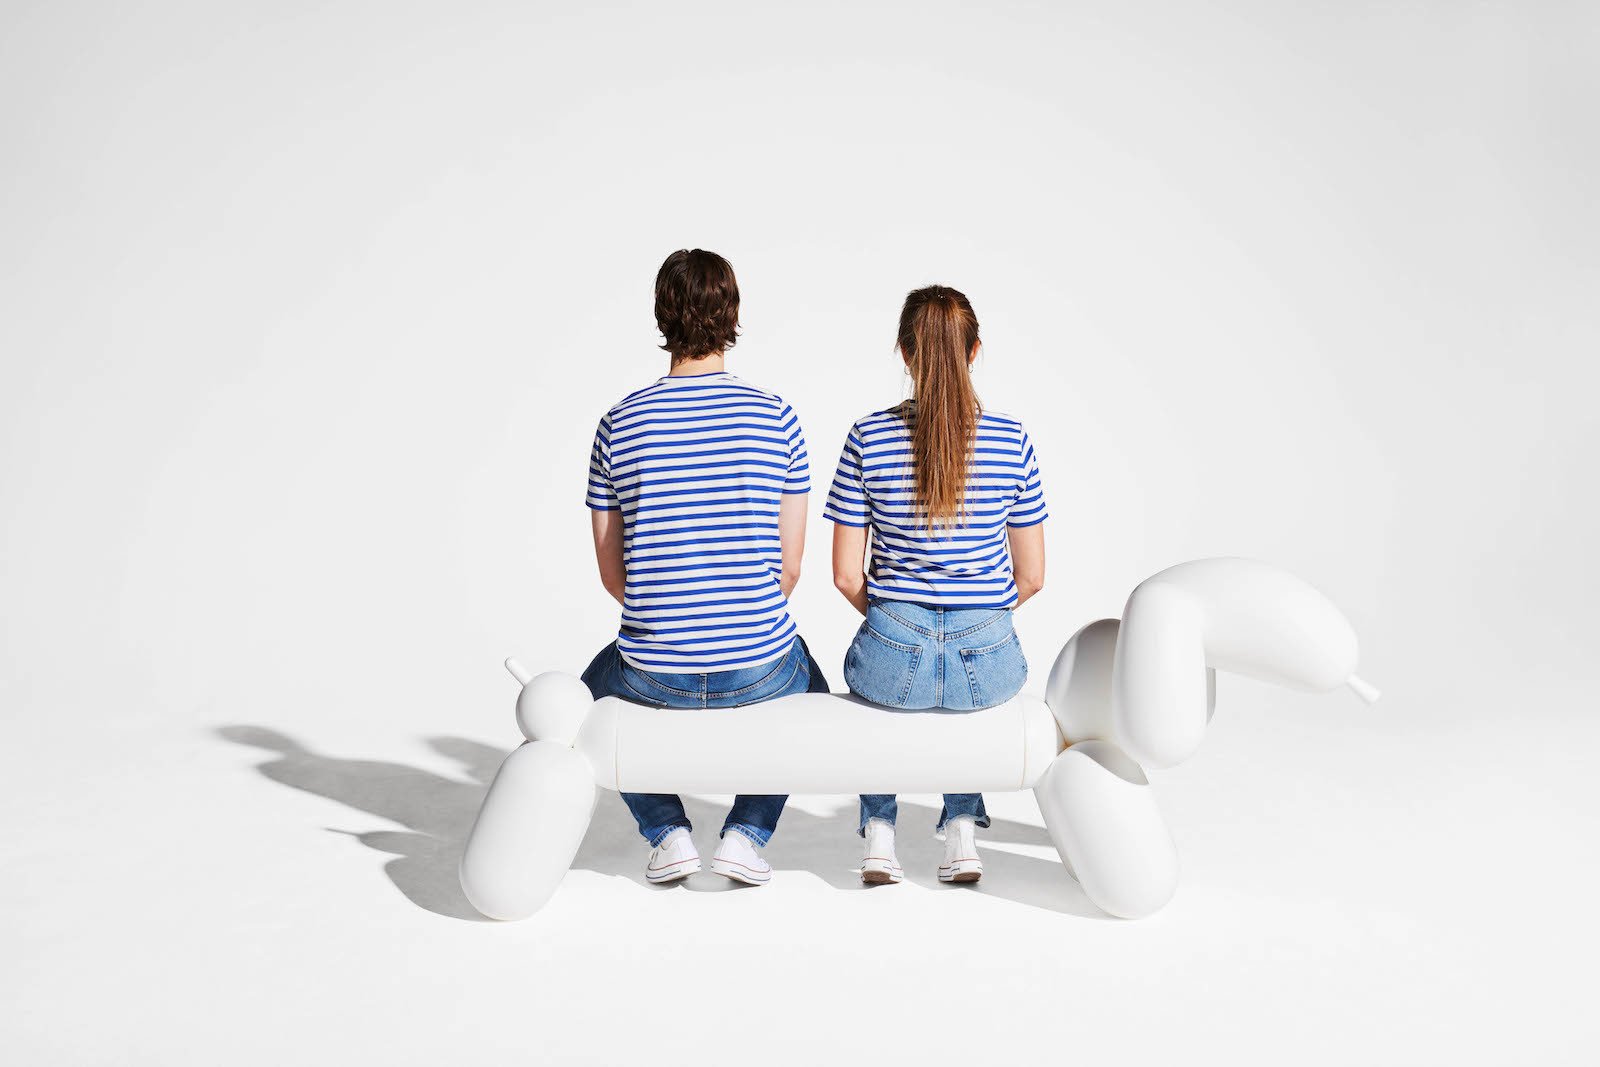 Zwei Menschen in gestreiften T-Shirts sitzen auf einer weißen Bank in Dackelform. 